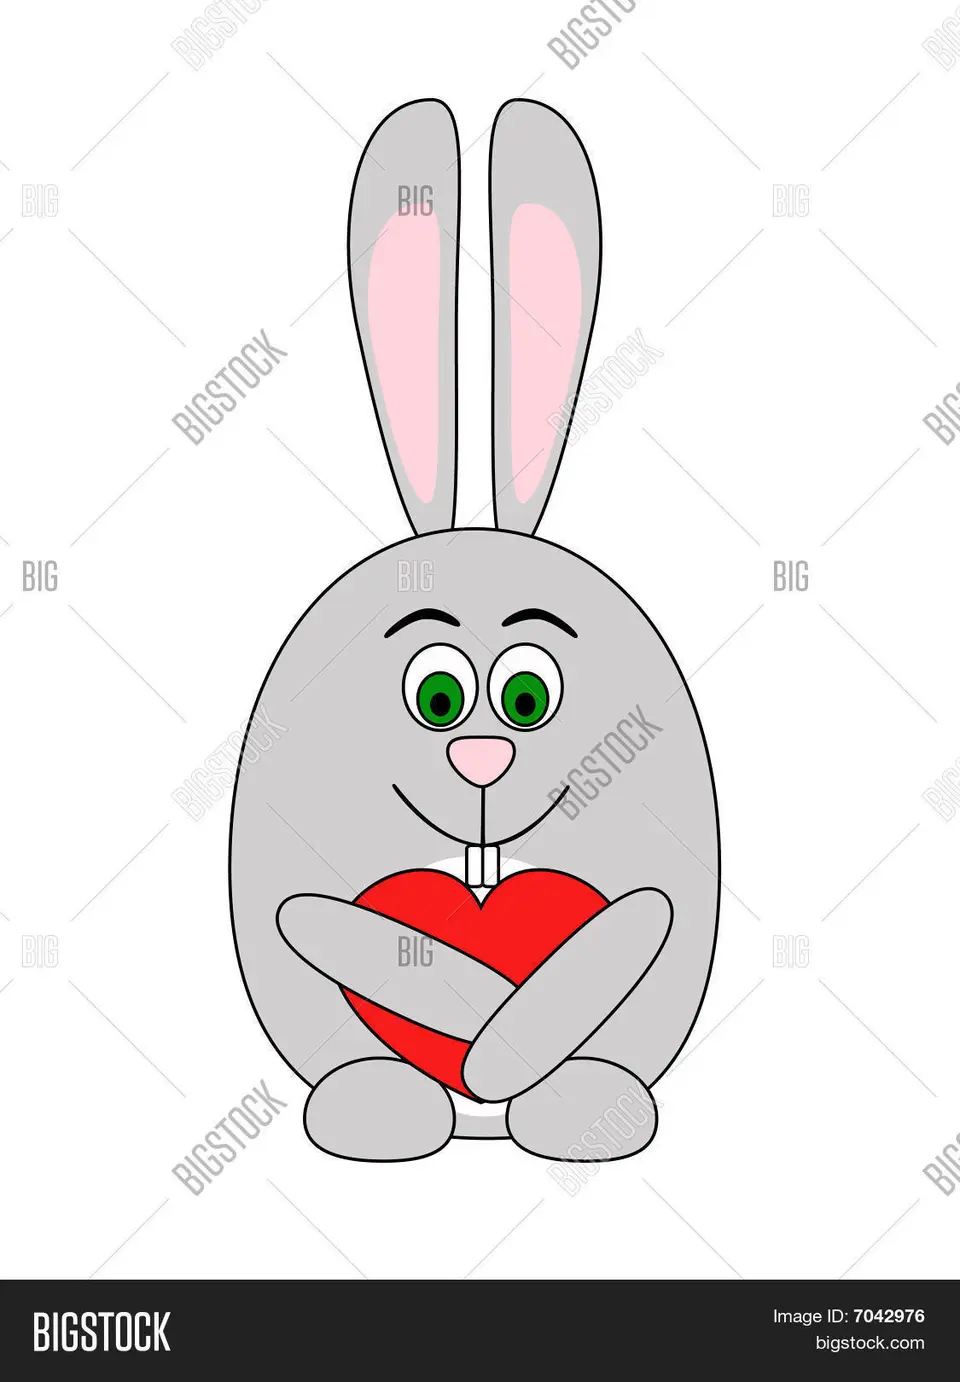 Рисовалка заяц с сердечком